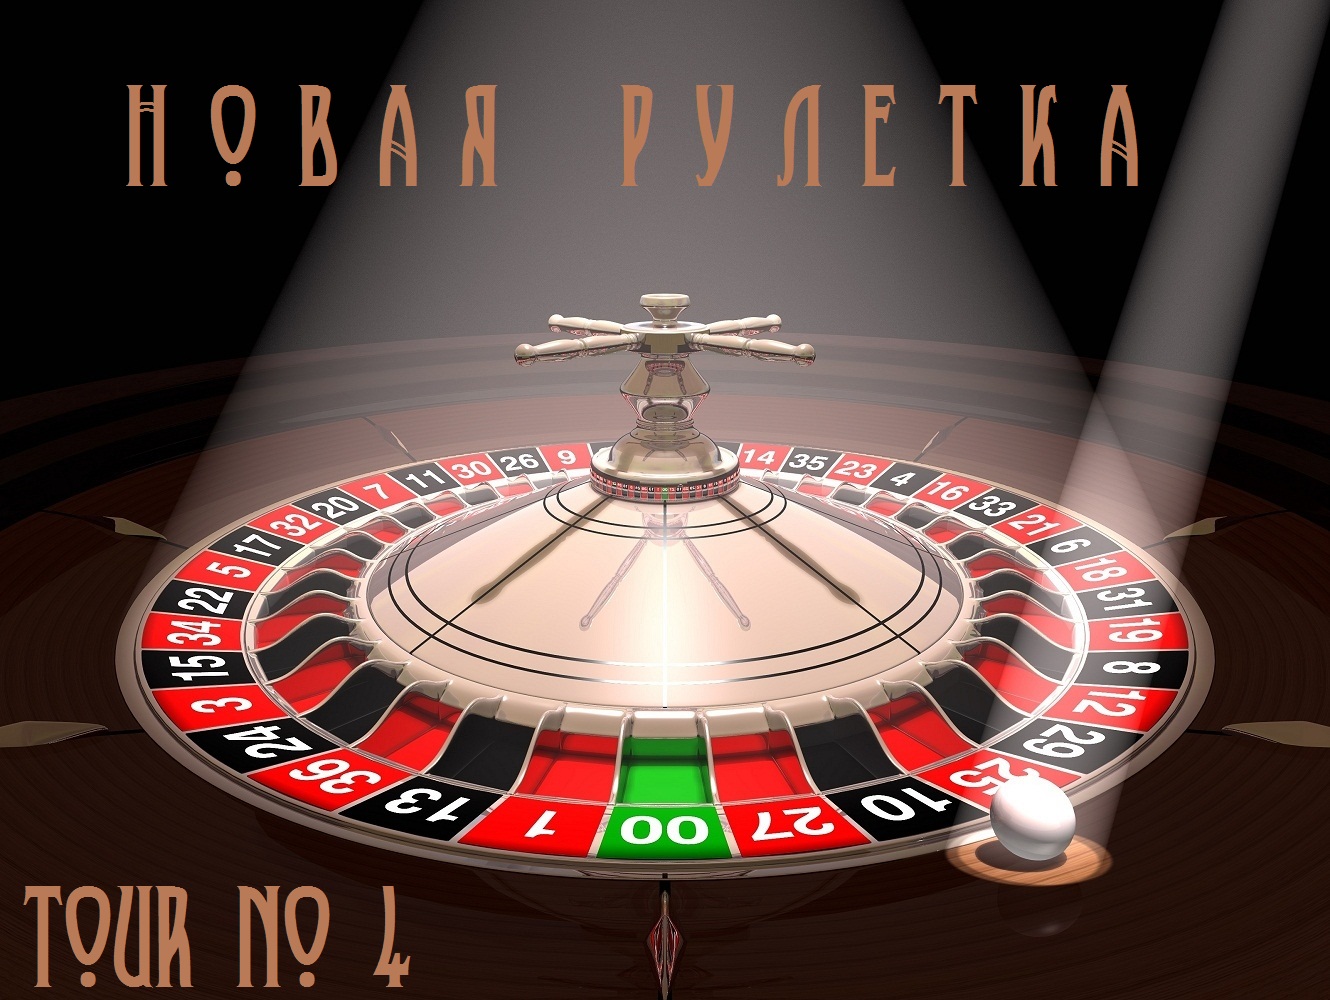 Vulcan casino roulette